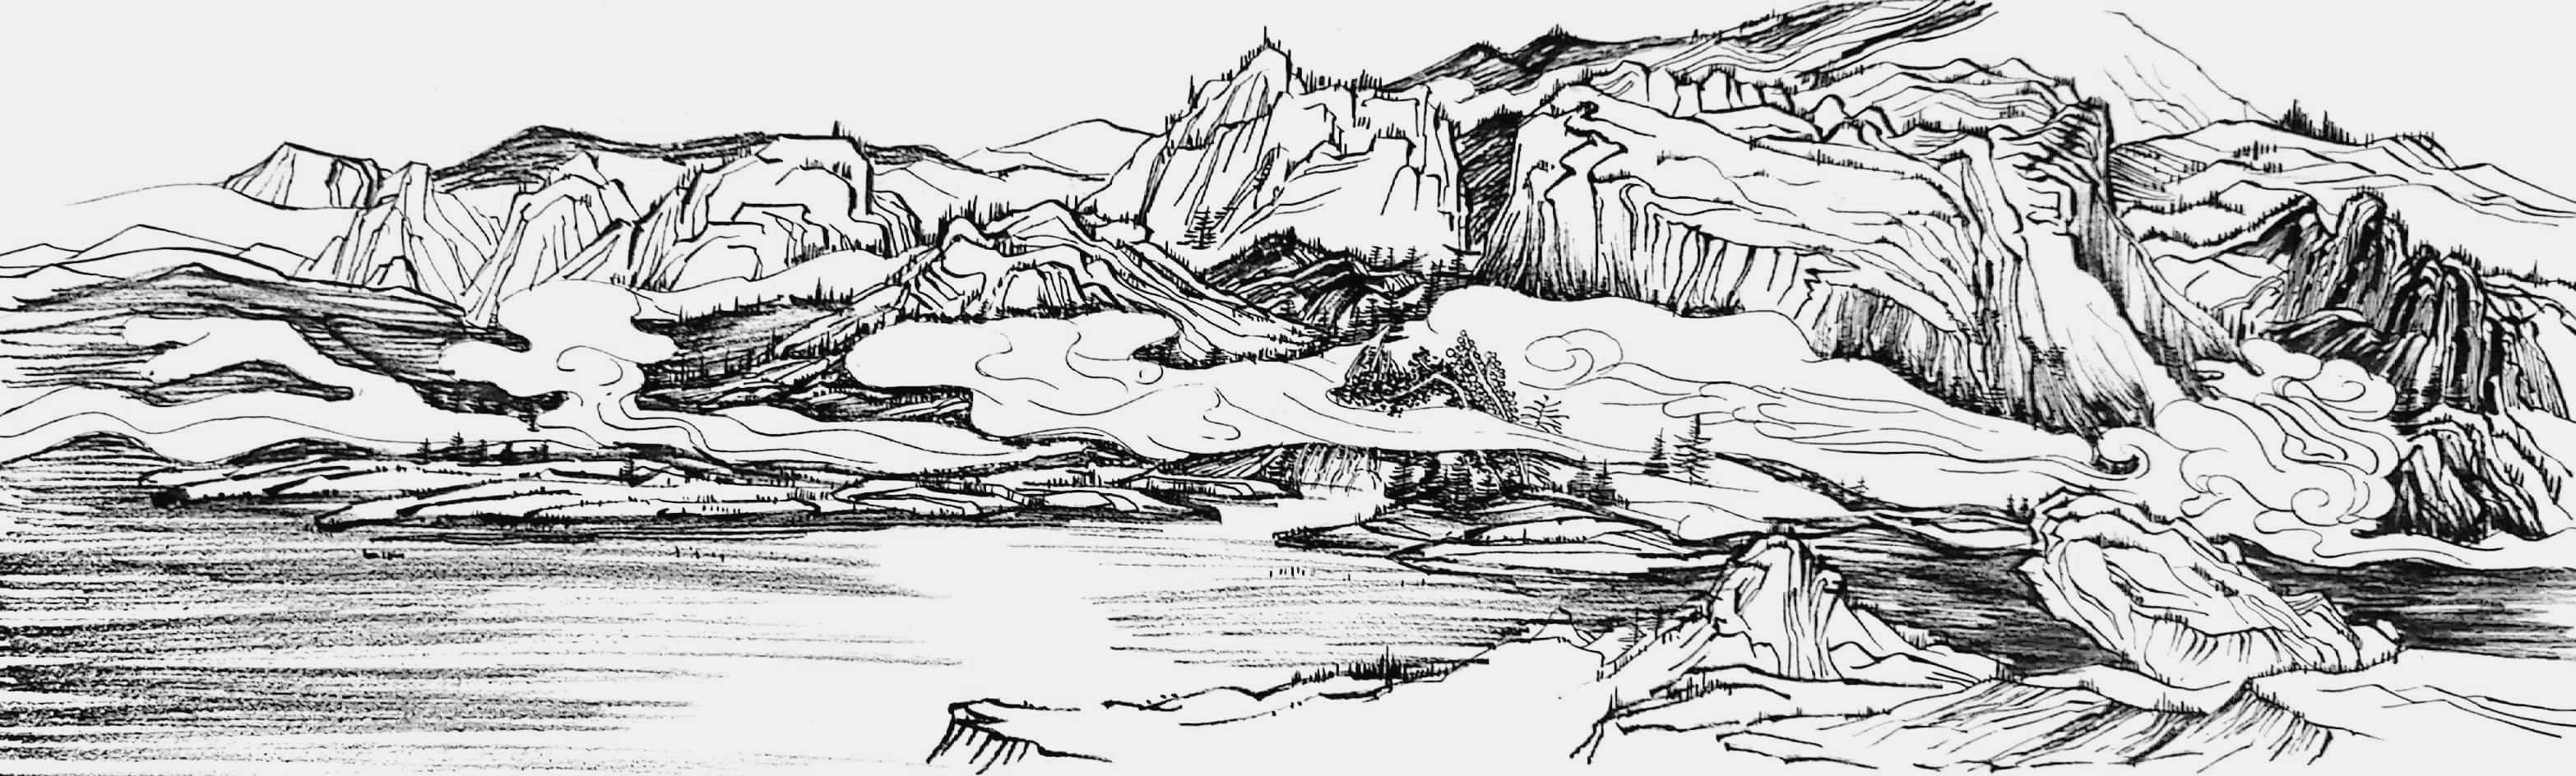 钢笔素描,临摹山水画